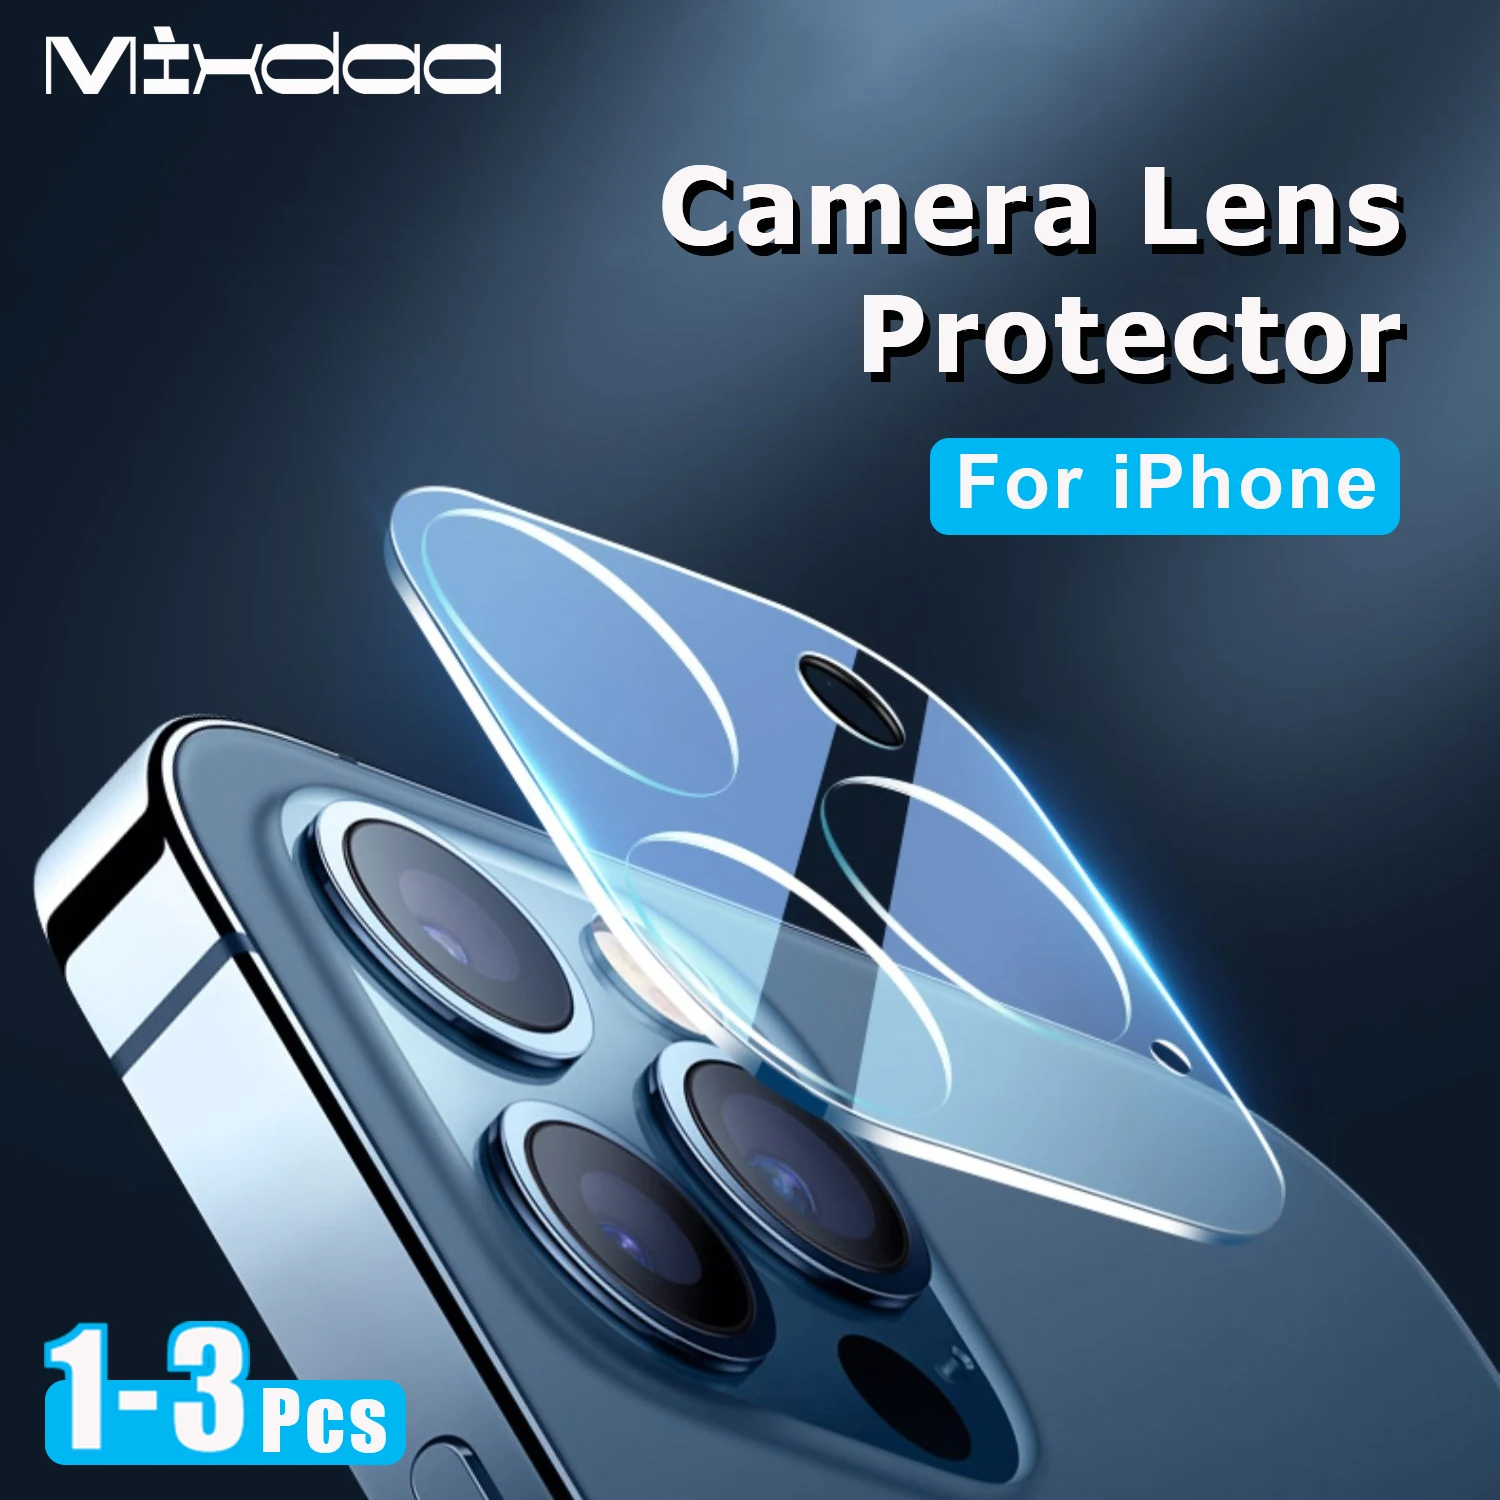 Protecteur de verre d'objectif d'appareil photo pour iPhone, pour iPhone 11, 12, 13 Pro Max, Mini étui de protection pour objectif d'appareil photo, pour téléphones Apple